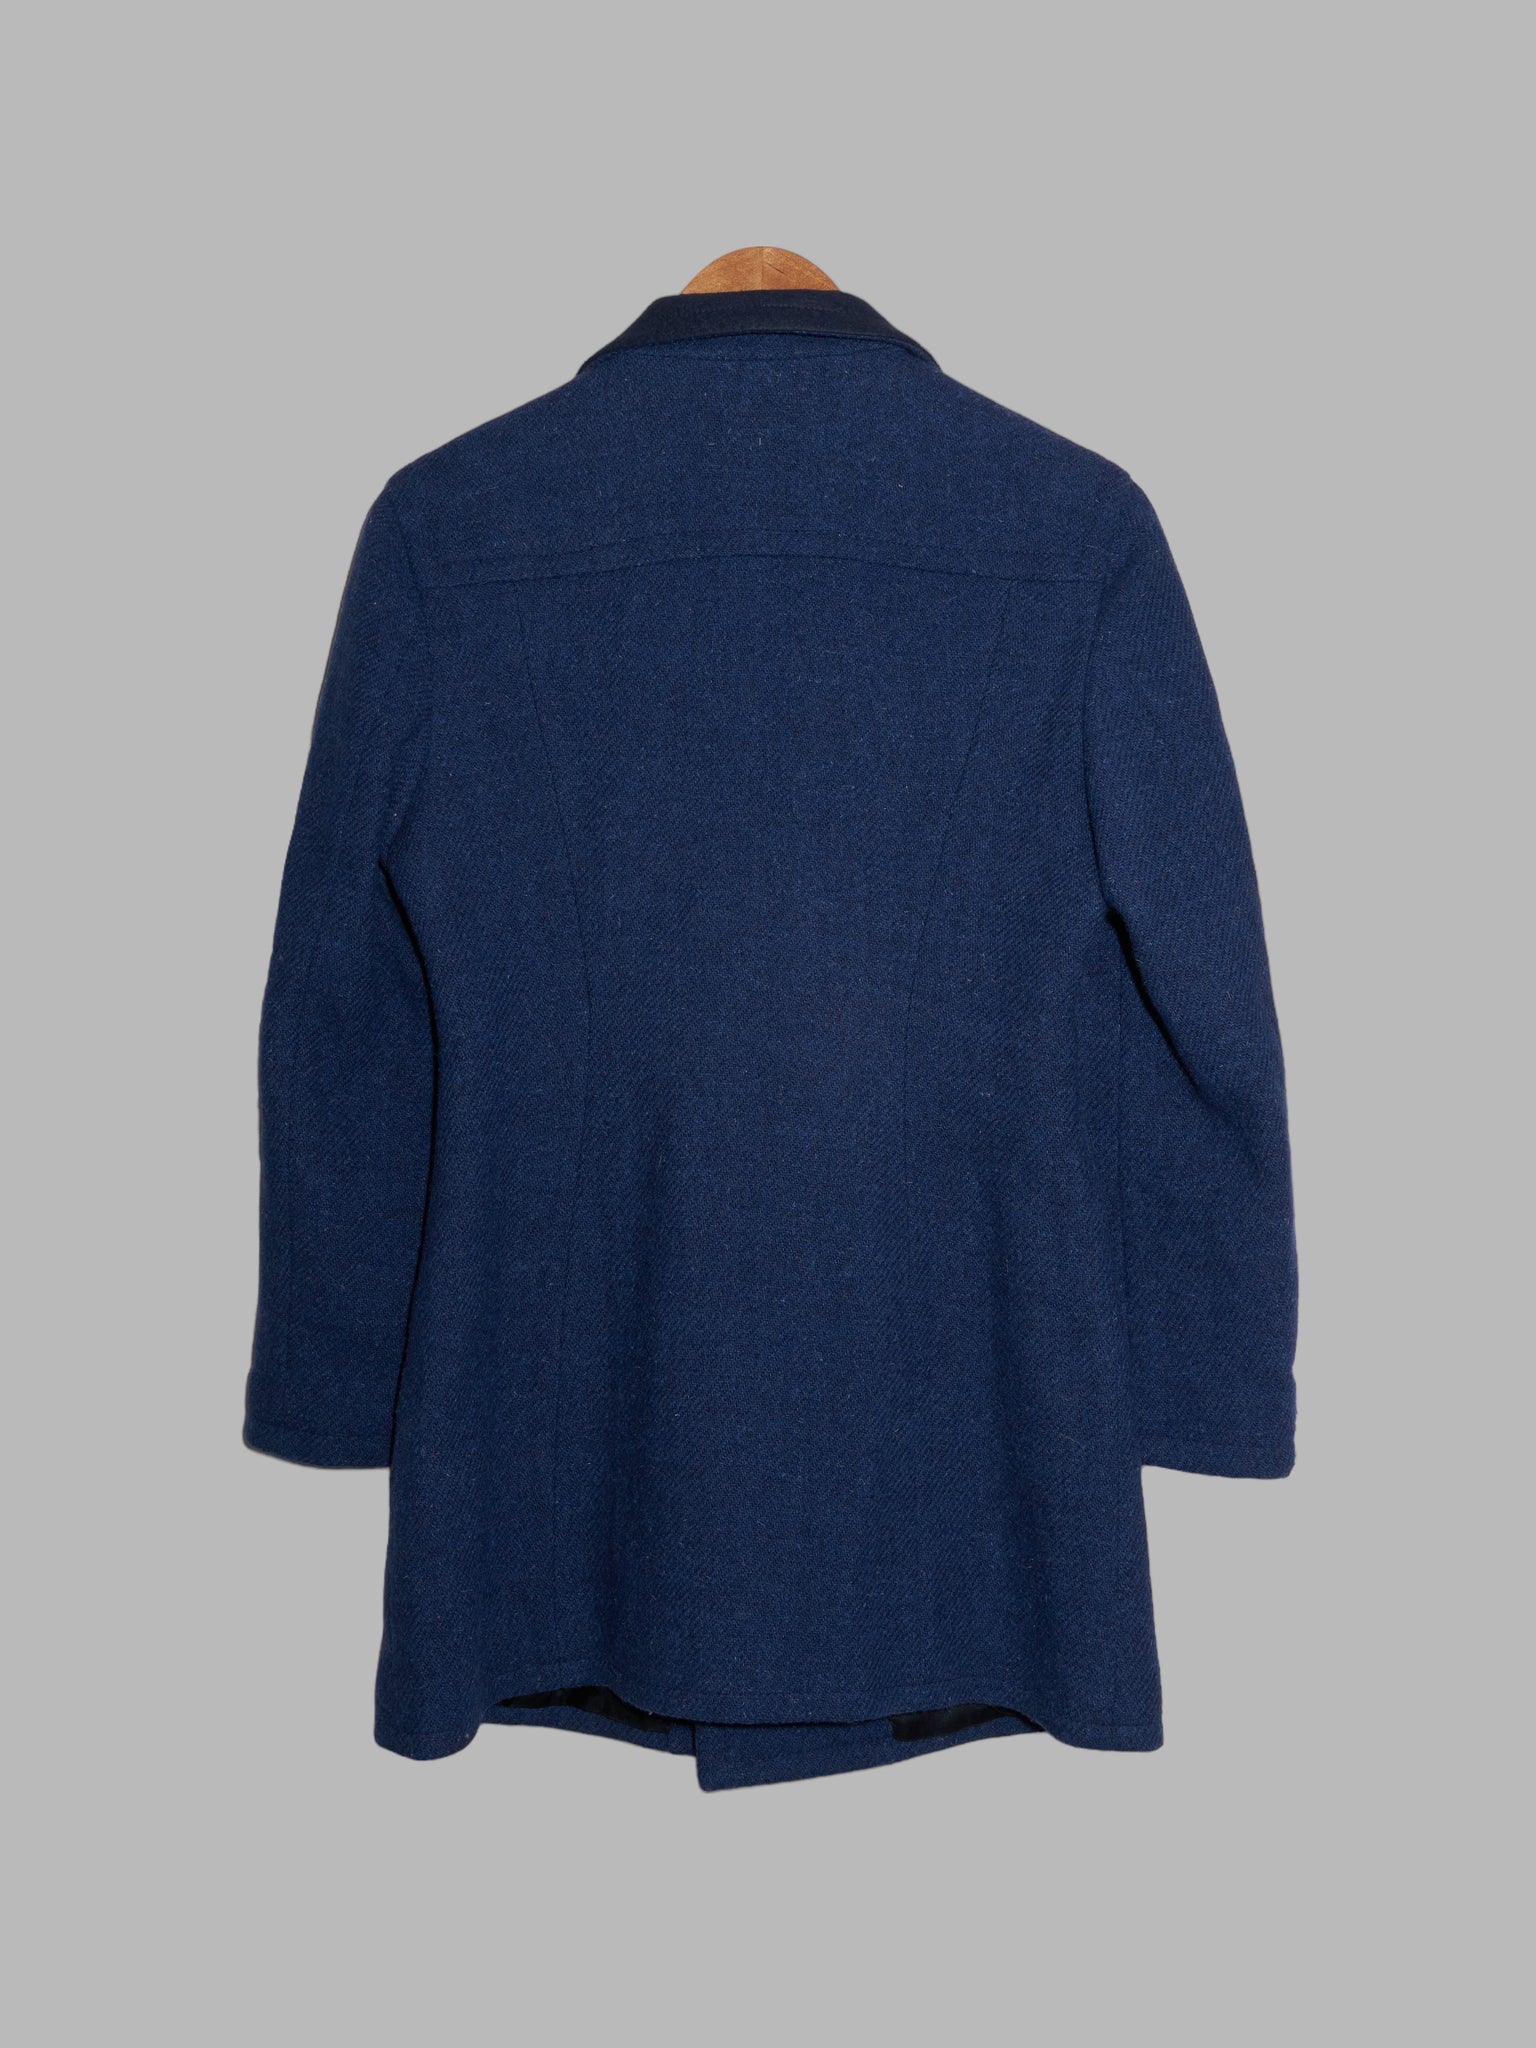 Dirk Bikkembergs 1990s blue wool tweed peak lapel short coat